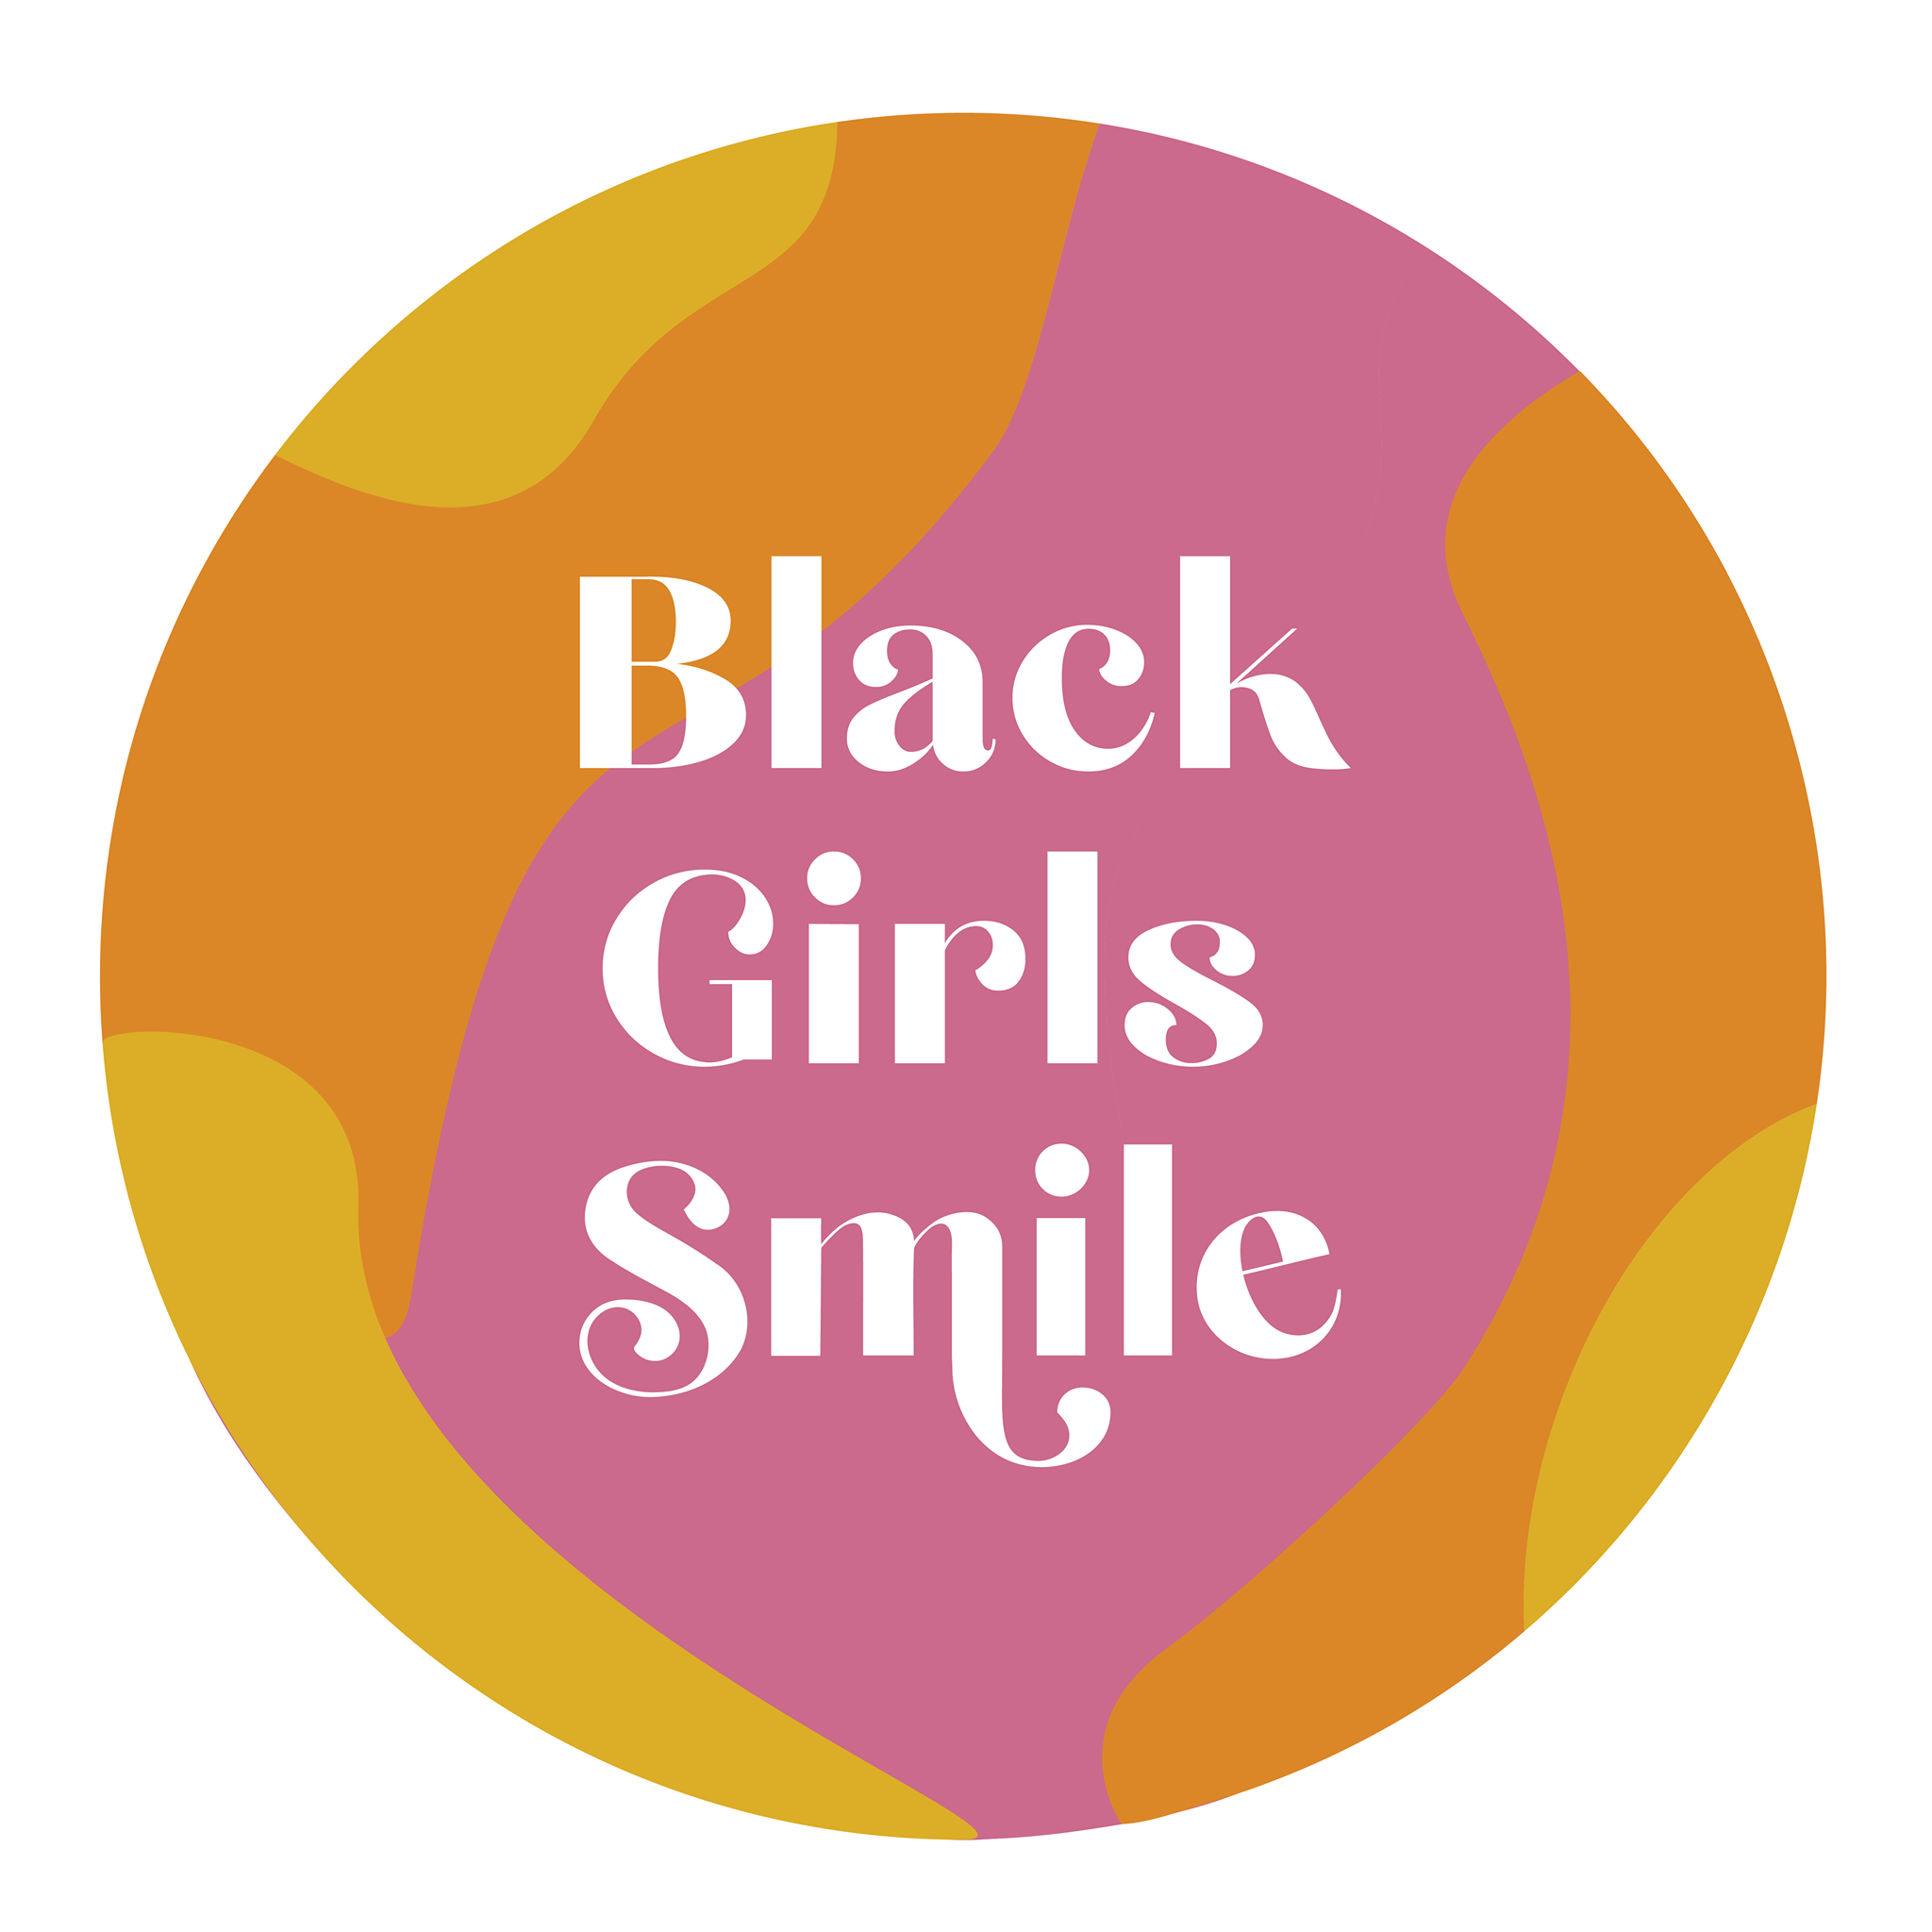 BlackGirlsSmile.org